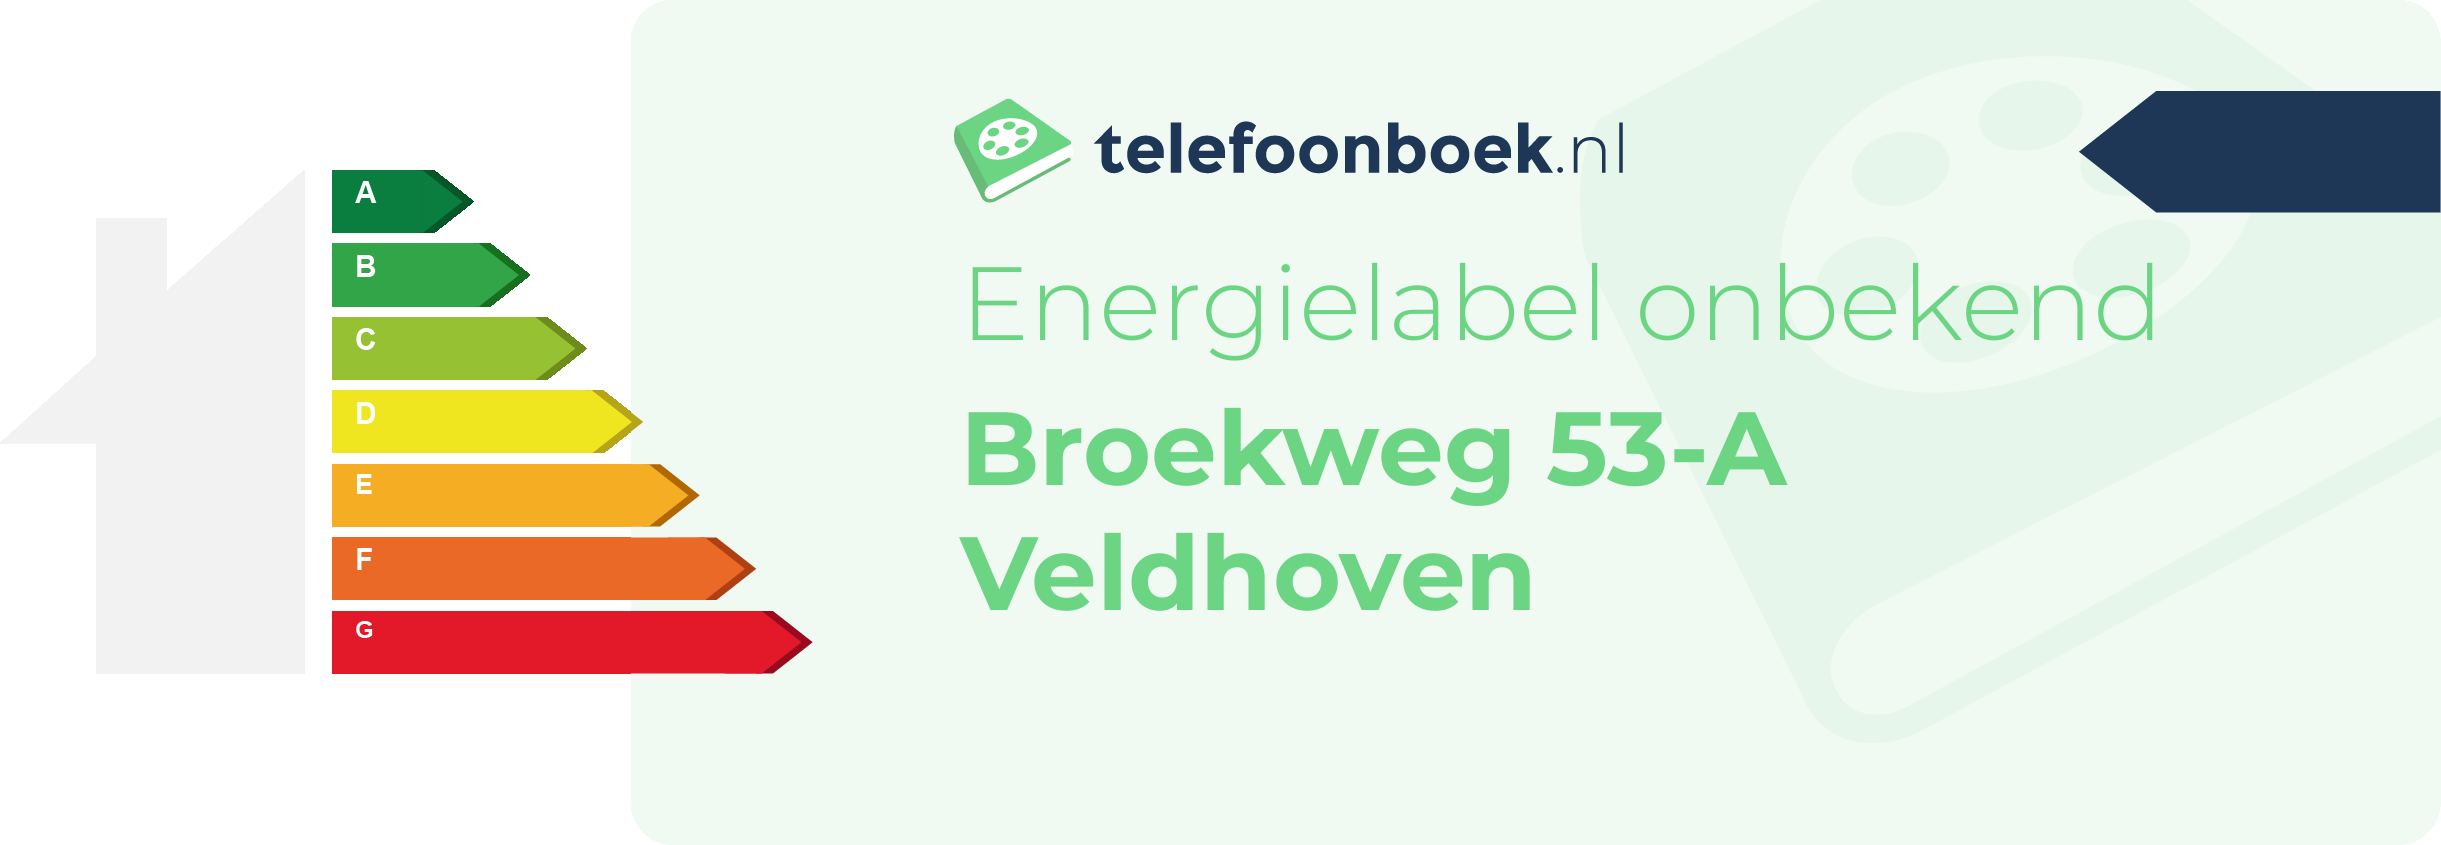 Energielabel Broekweg 53-A Veldhoven